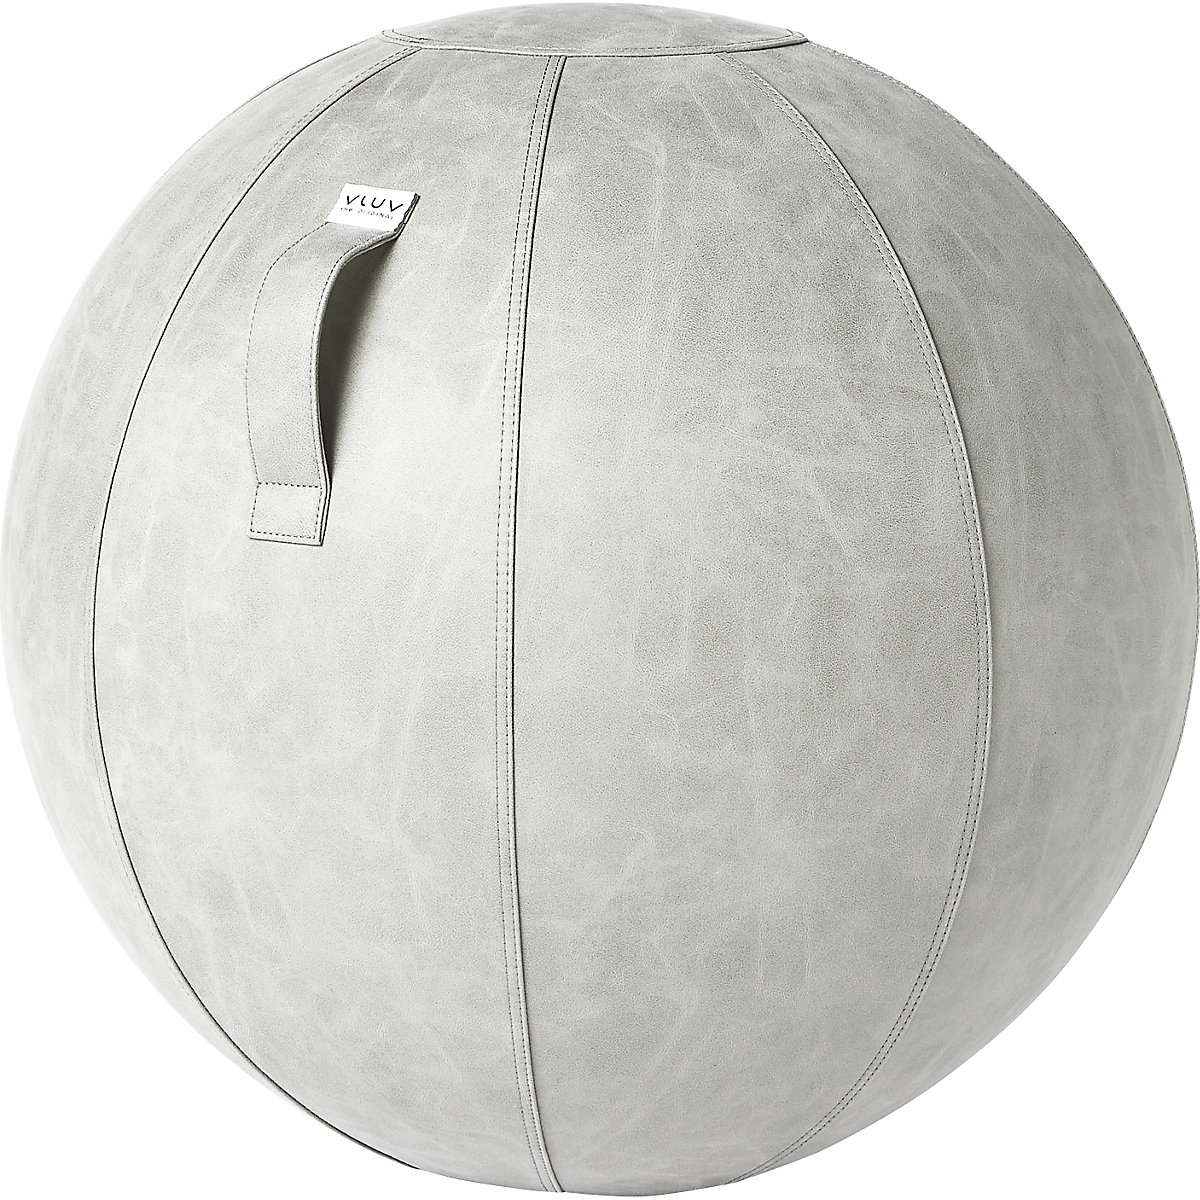 VLUV VEGA Sitzball, veganes Kunstleder, 700 – 750 mm, zement